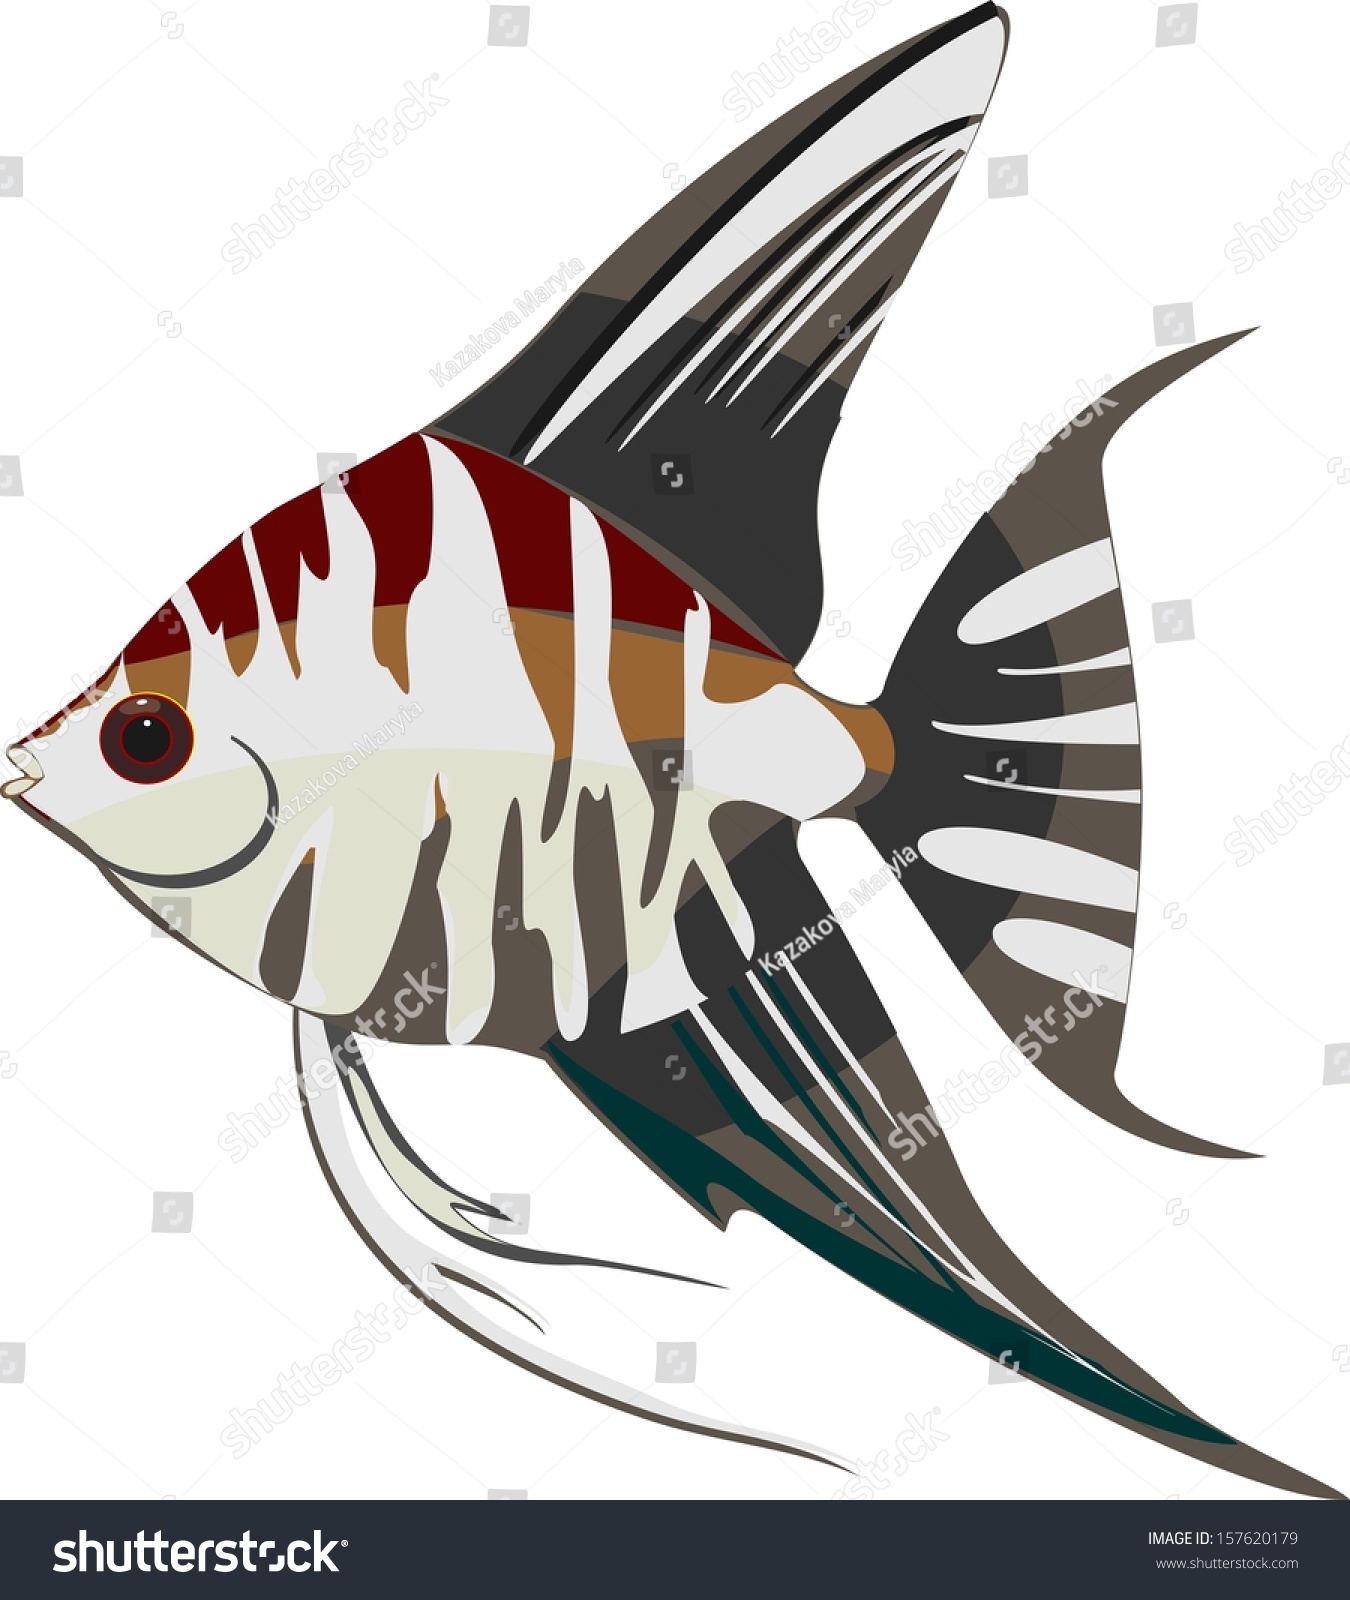 21 Teardrop angelfish Images, Stock Photos & Vectors | Shutterstock